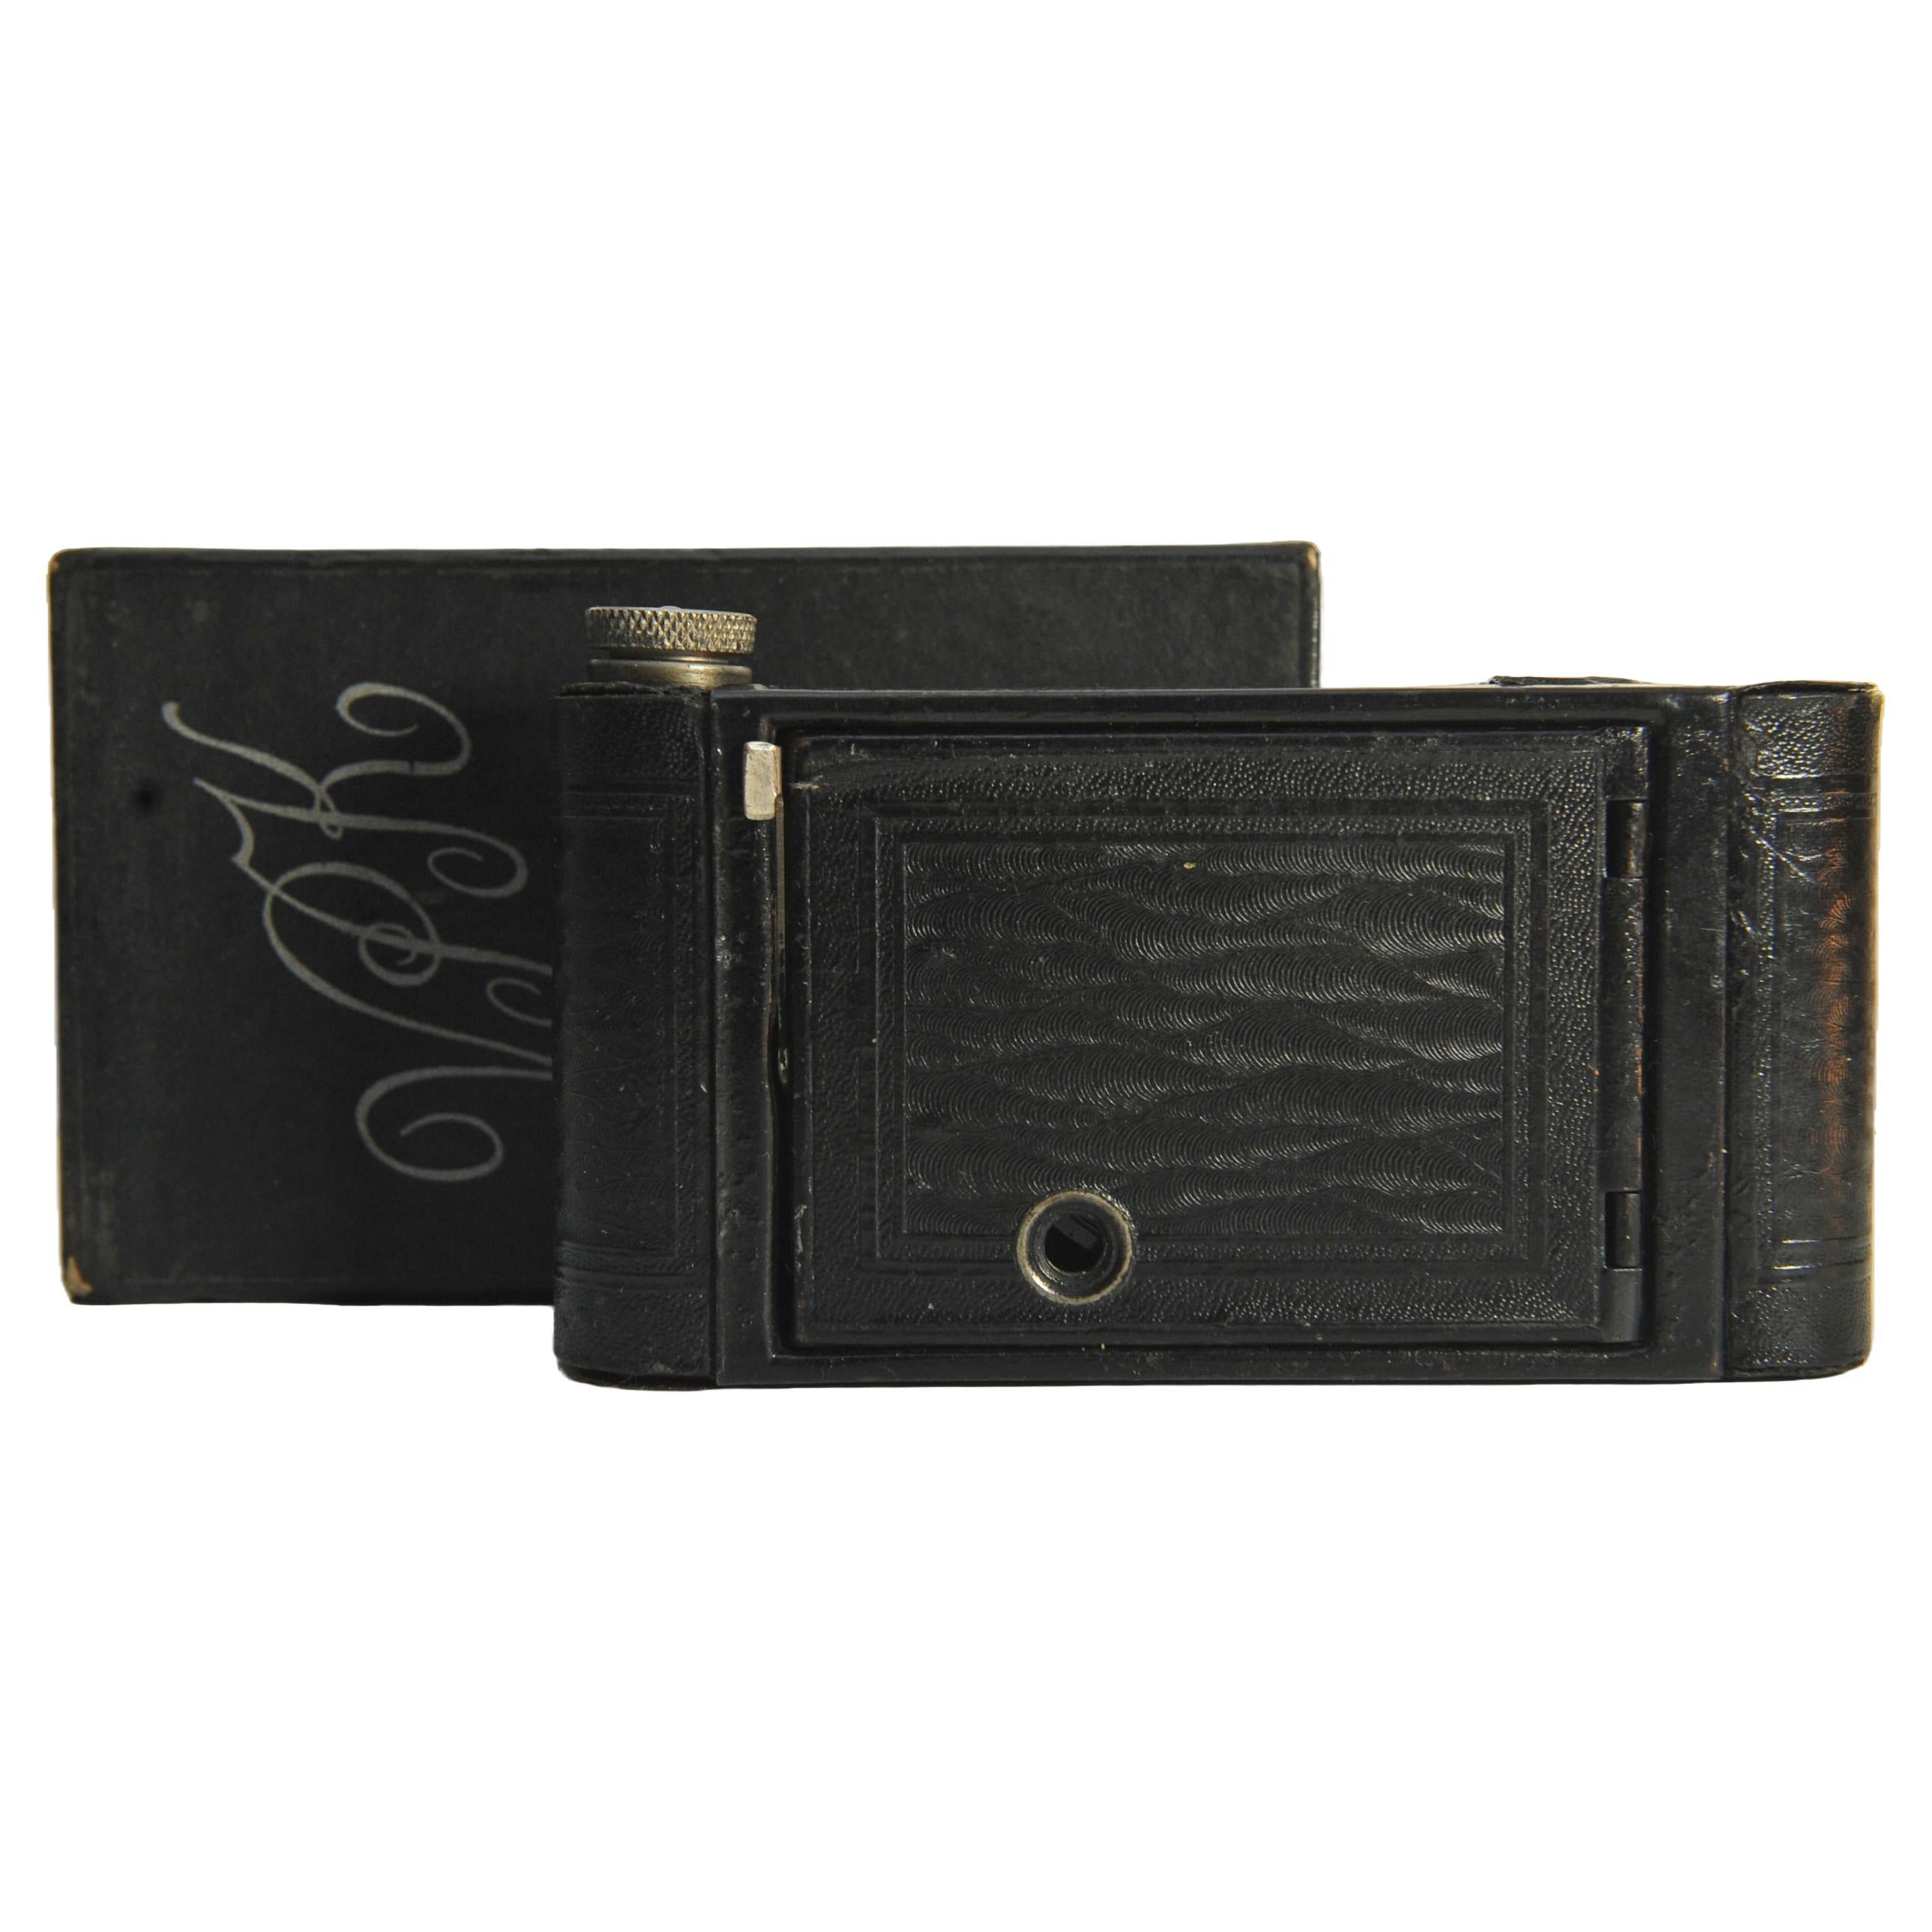 Eastman Kodak Vest Pocket Model B 127 Film Folding Camera With Original Branded Cardboard Box & Paper Booklet 

Réf : 27323

Vers 1925, le modèle B succède au Vest Pocket Kodak. Il s'agit d'une conception entièrement nouvelle, qui correspond aux